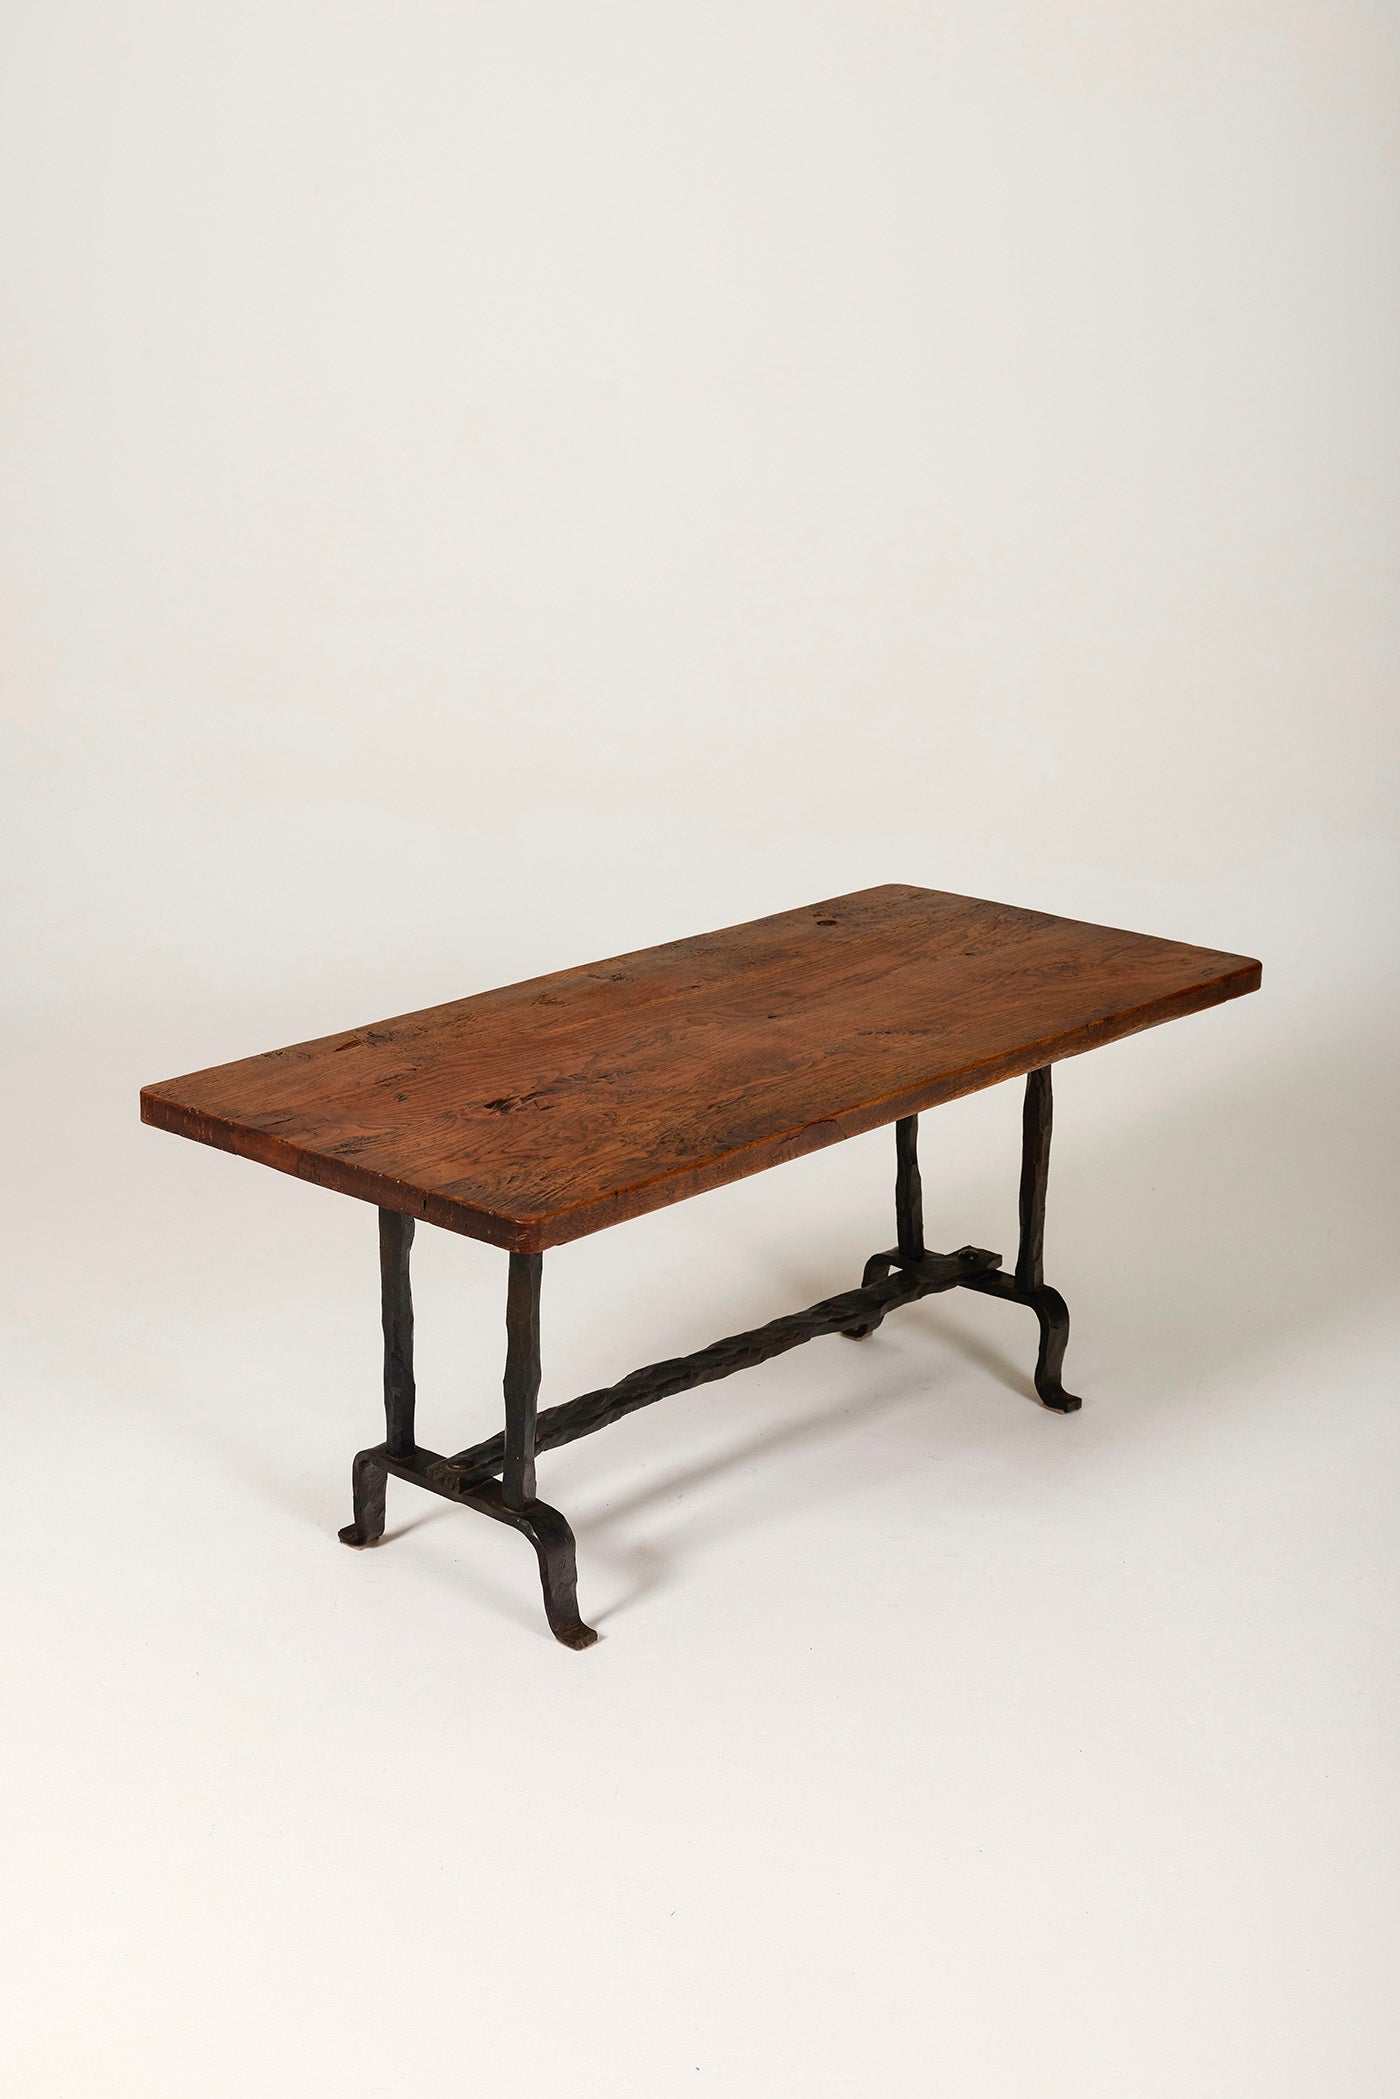 Table basse ou table d'appoint avec un plateau en chêne et un piètement en fer forgé.  Art populaire français qui peut s'associer à du mobilier des ateliers de Marolles. Très bel état.